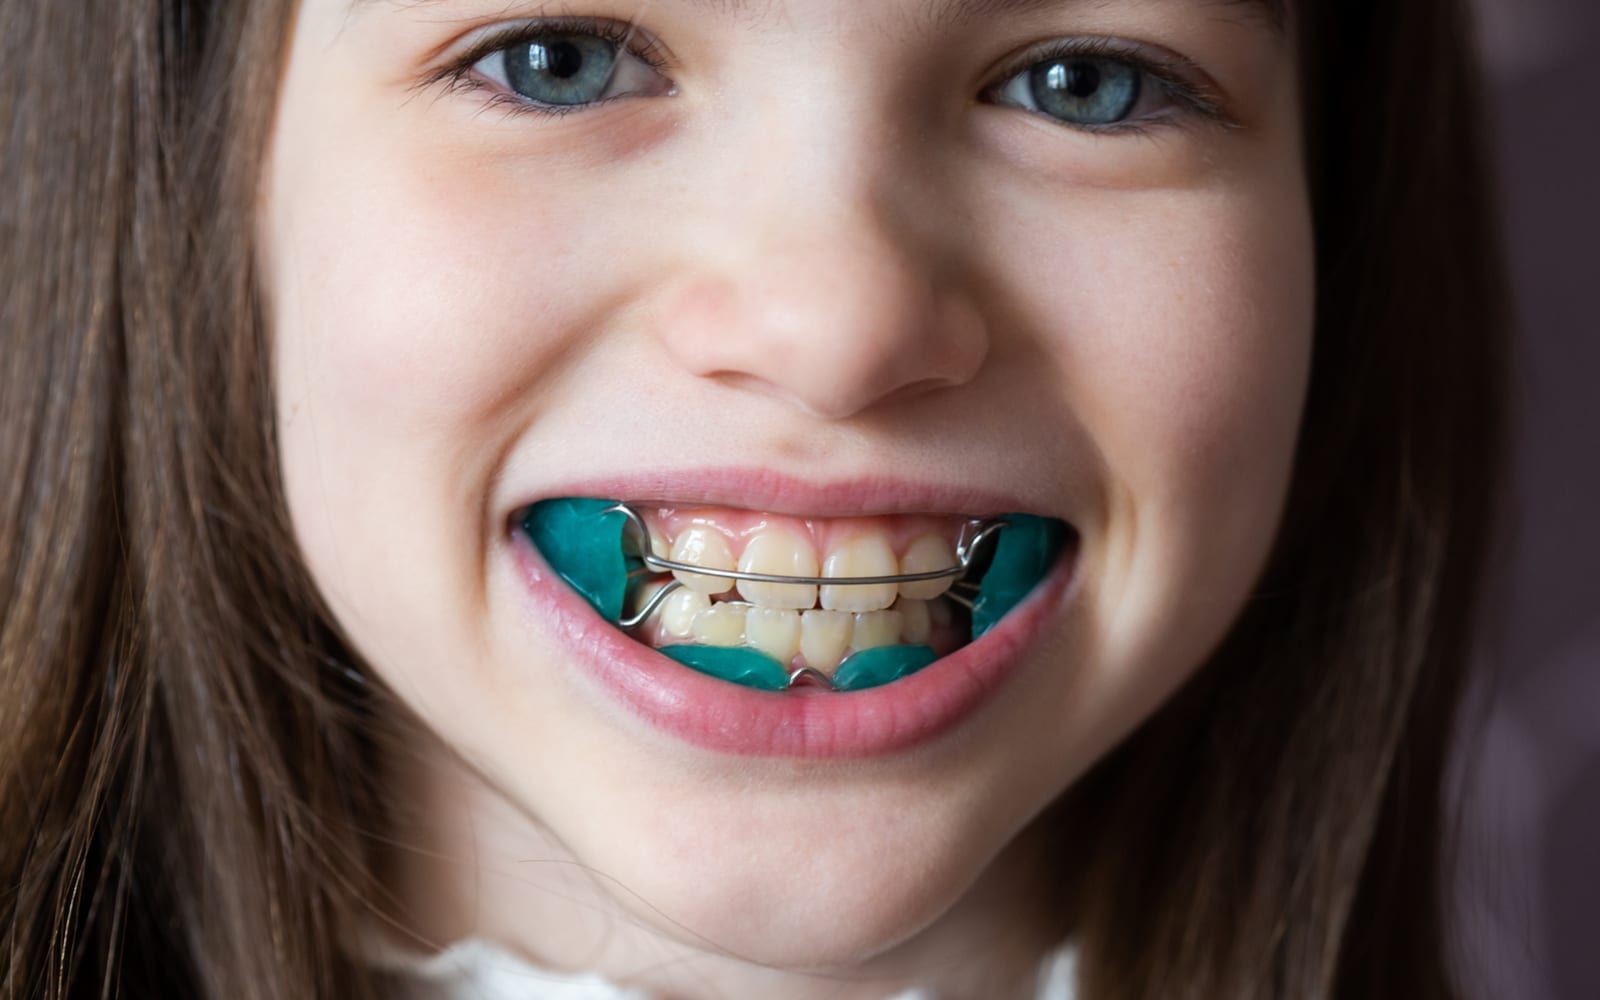 Child With Orthodontics